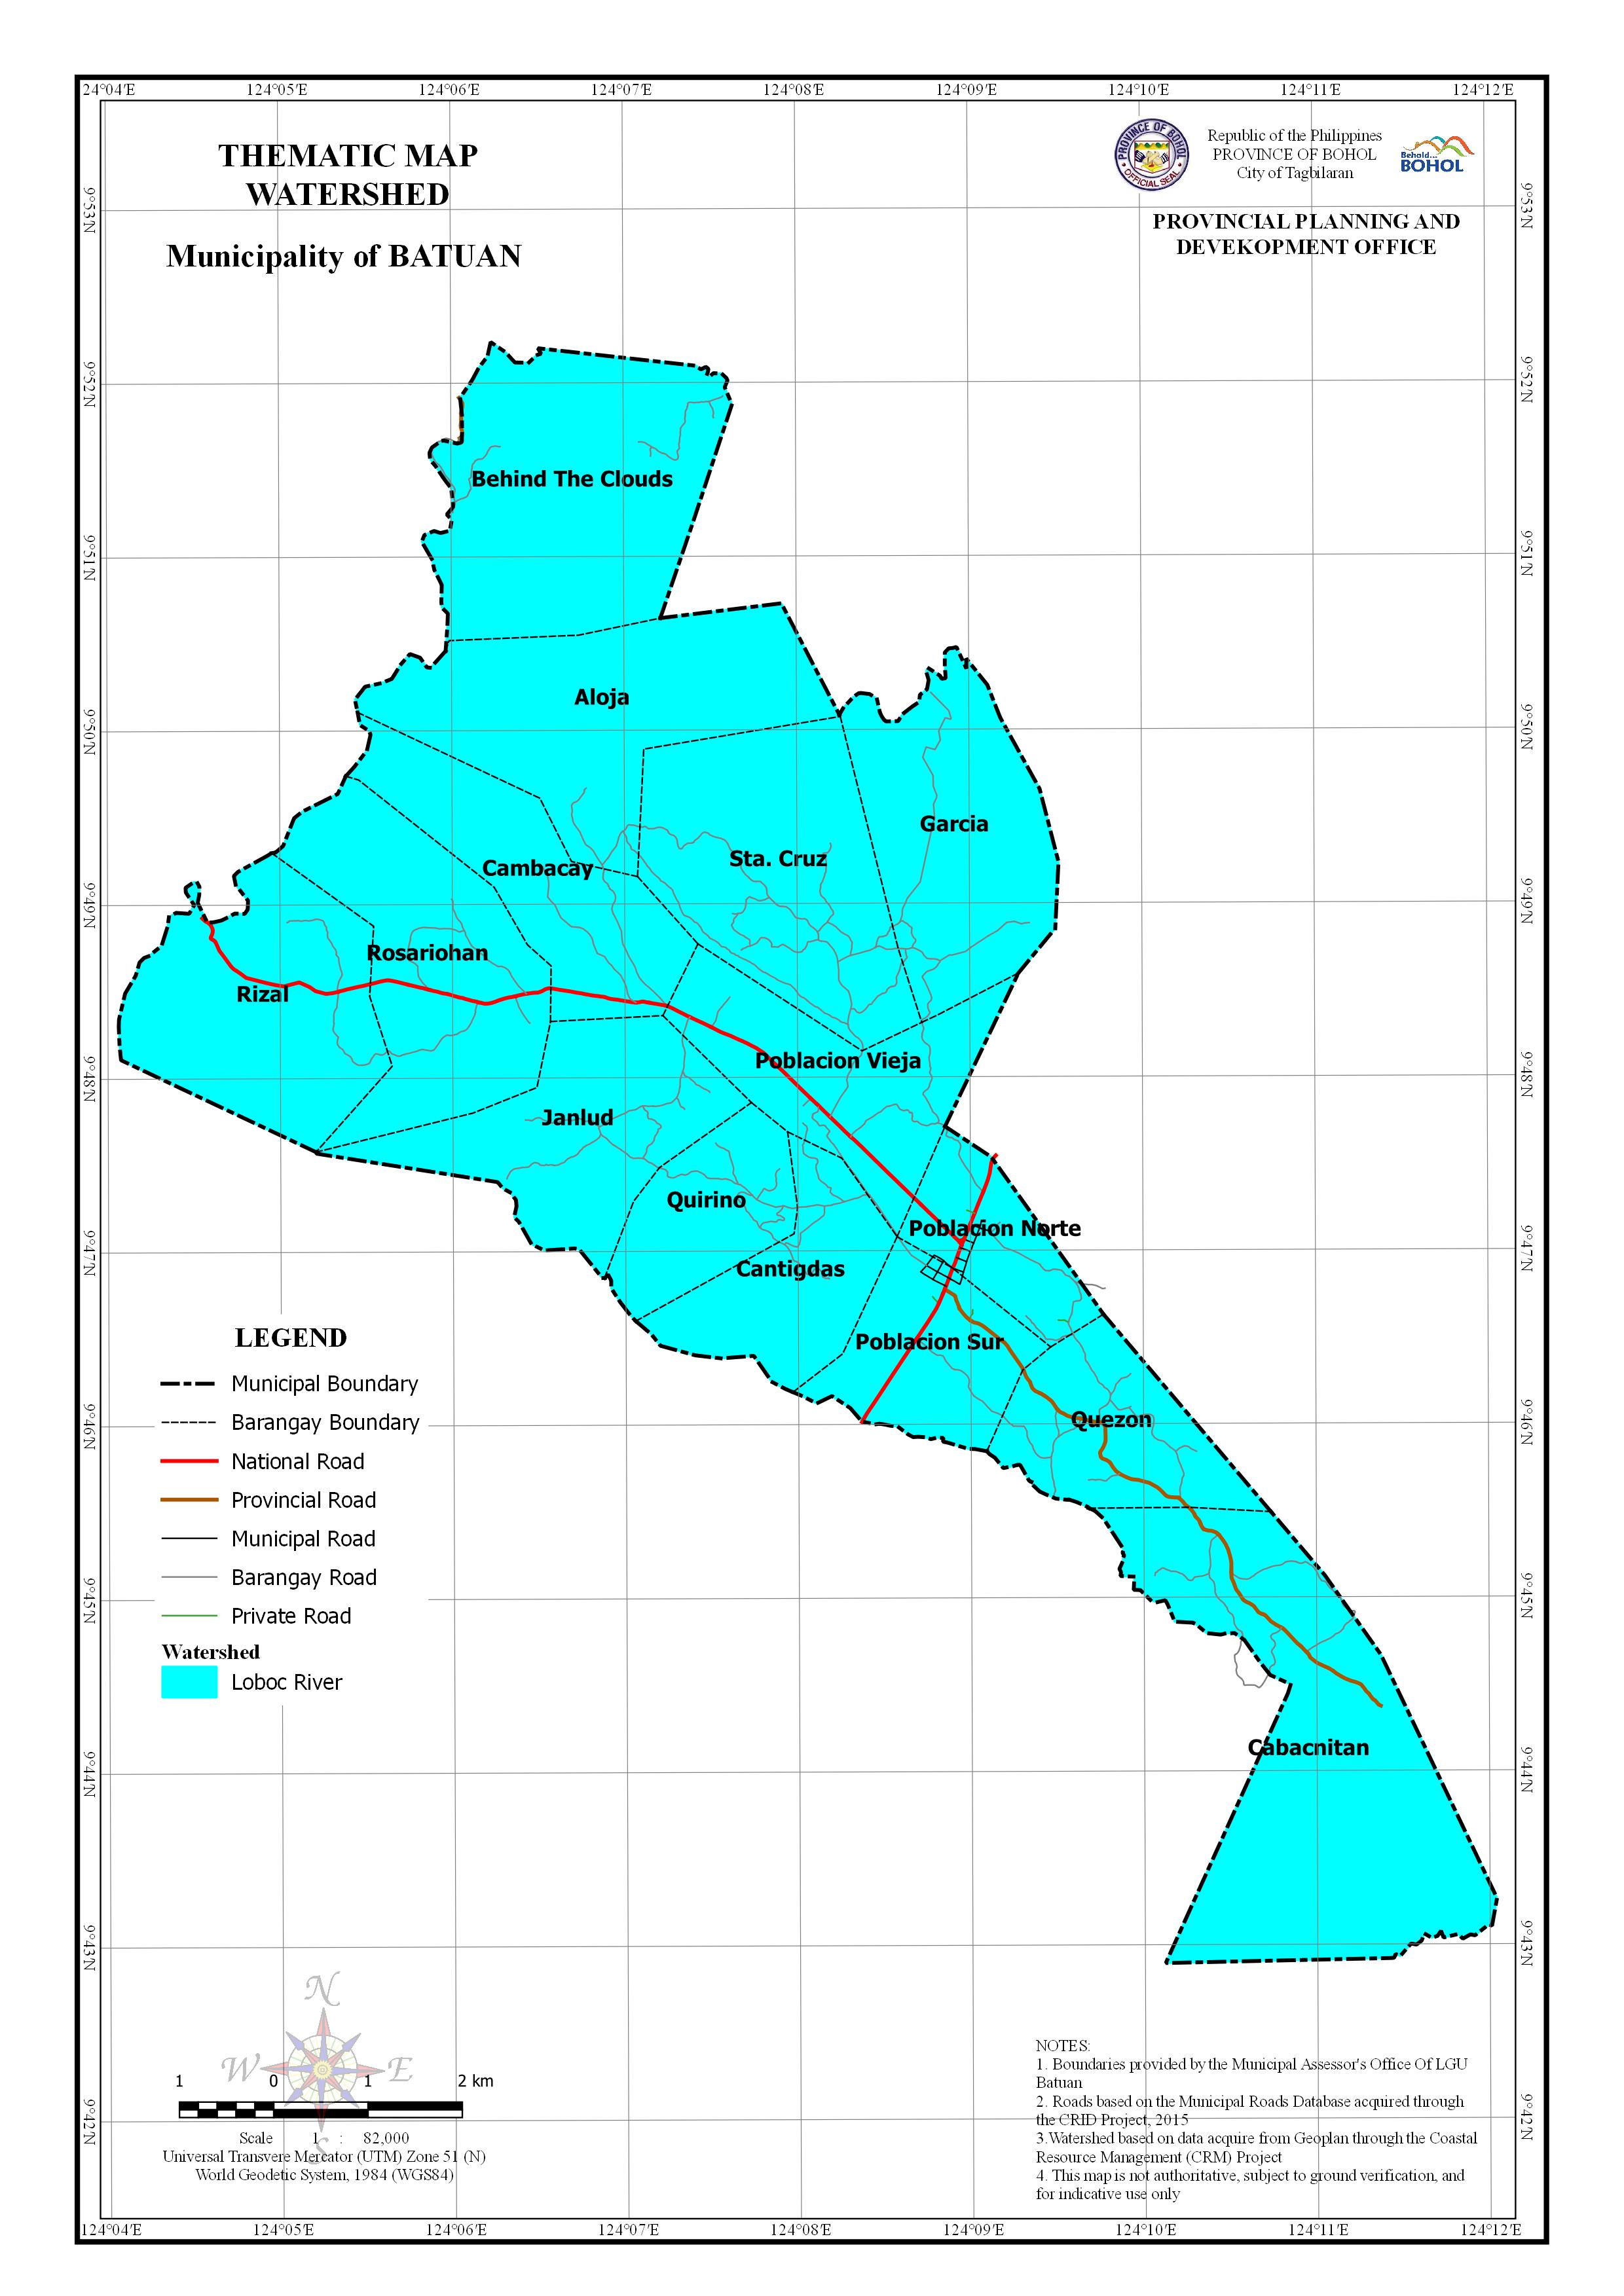 Watershed Map of Batuan